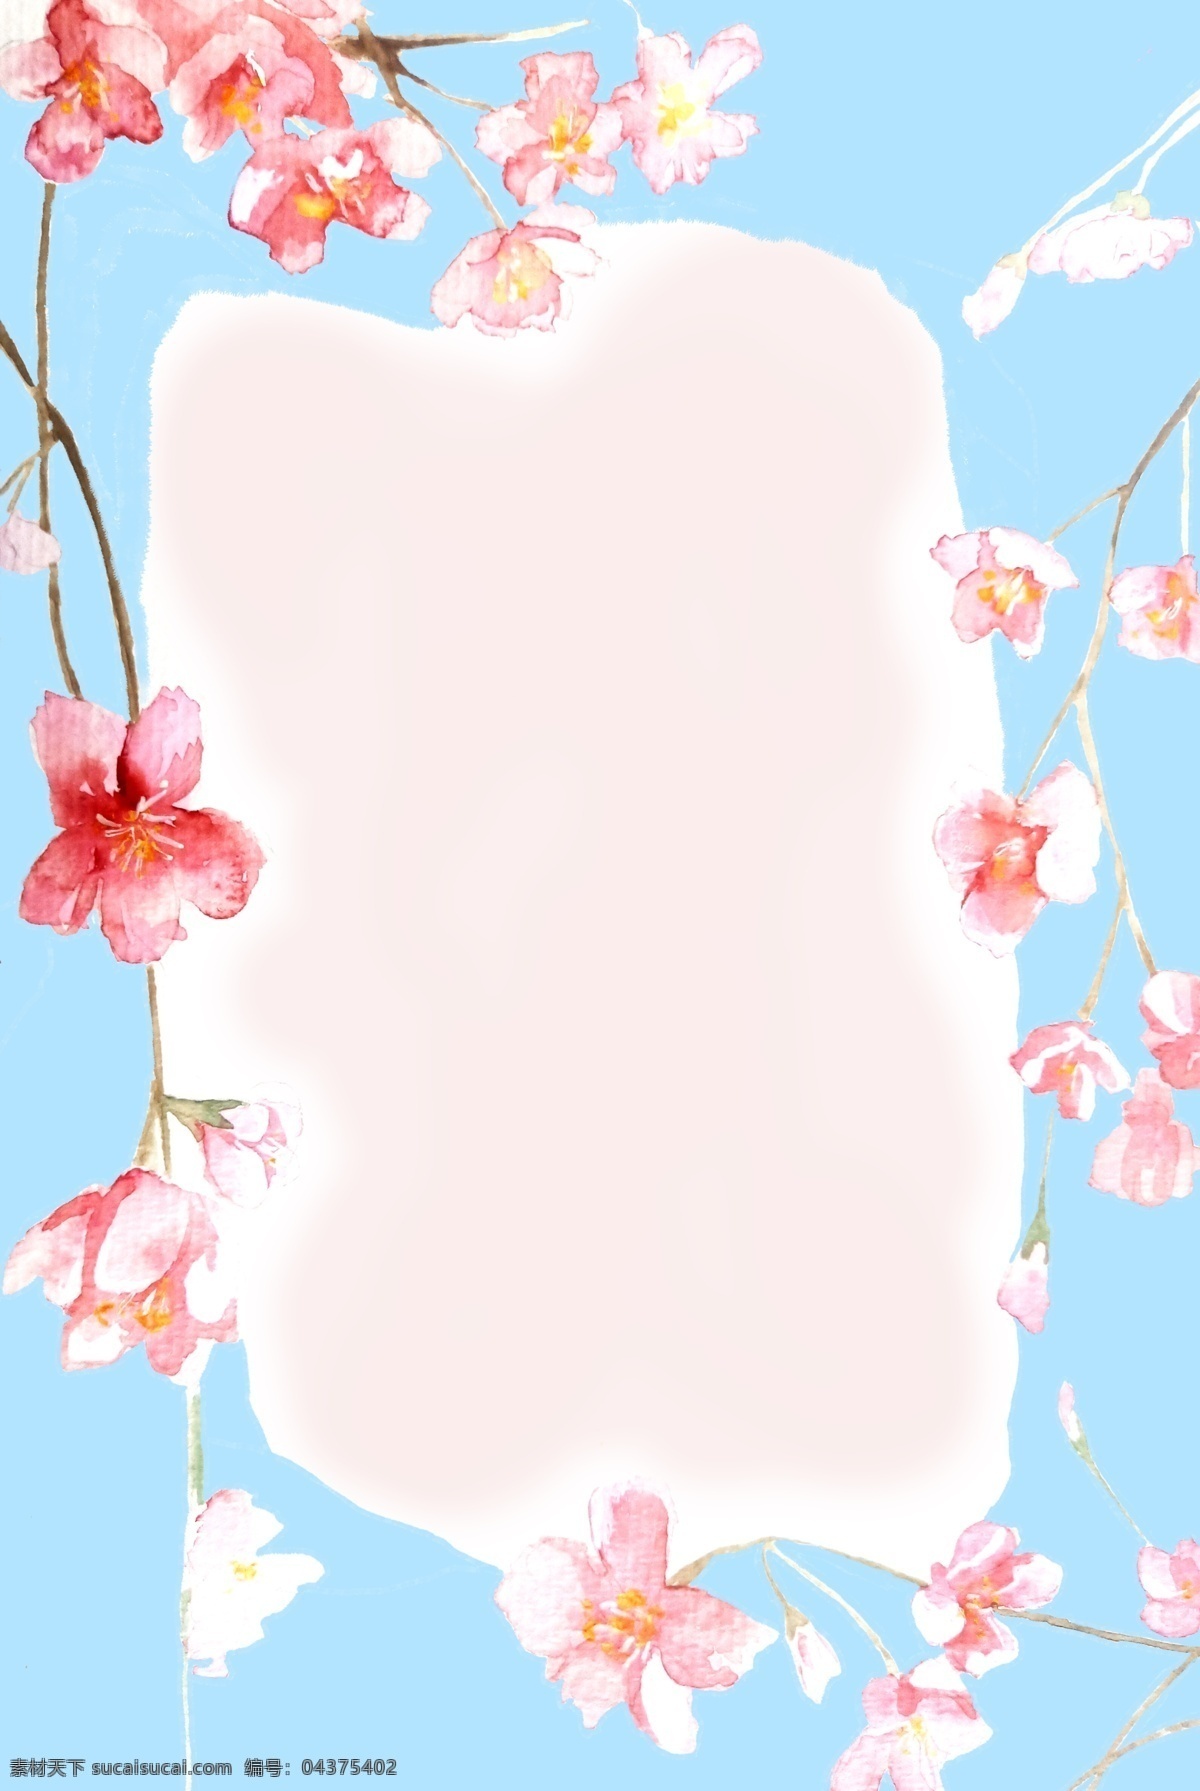 水彩 樱花 粉色 天蓝 花 框 唯美 海报 背景 花朵边框 蓝色 邀请函 婚庆 婚礼 植物 清新 花朵边框背景